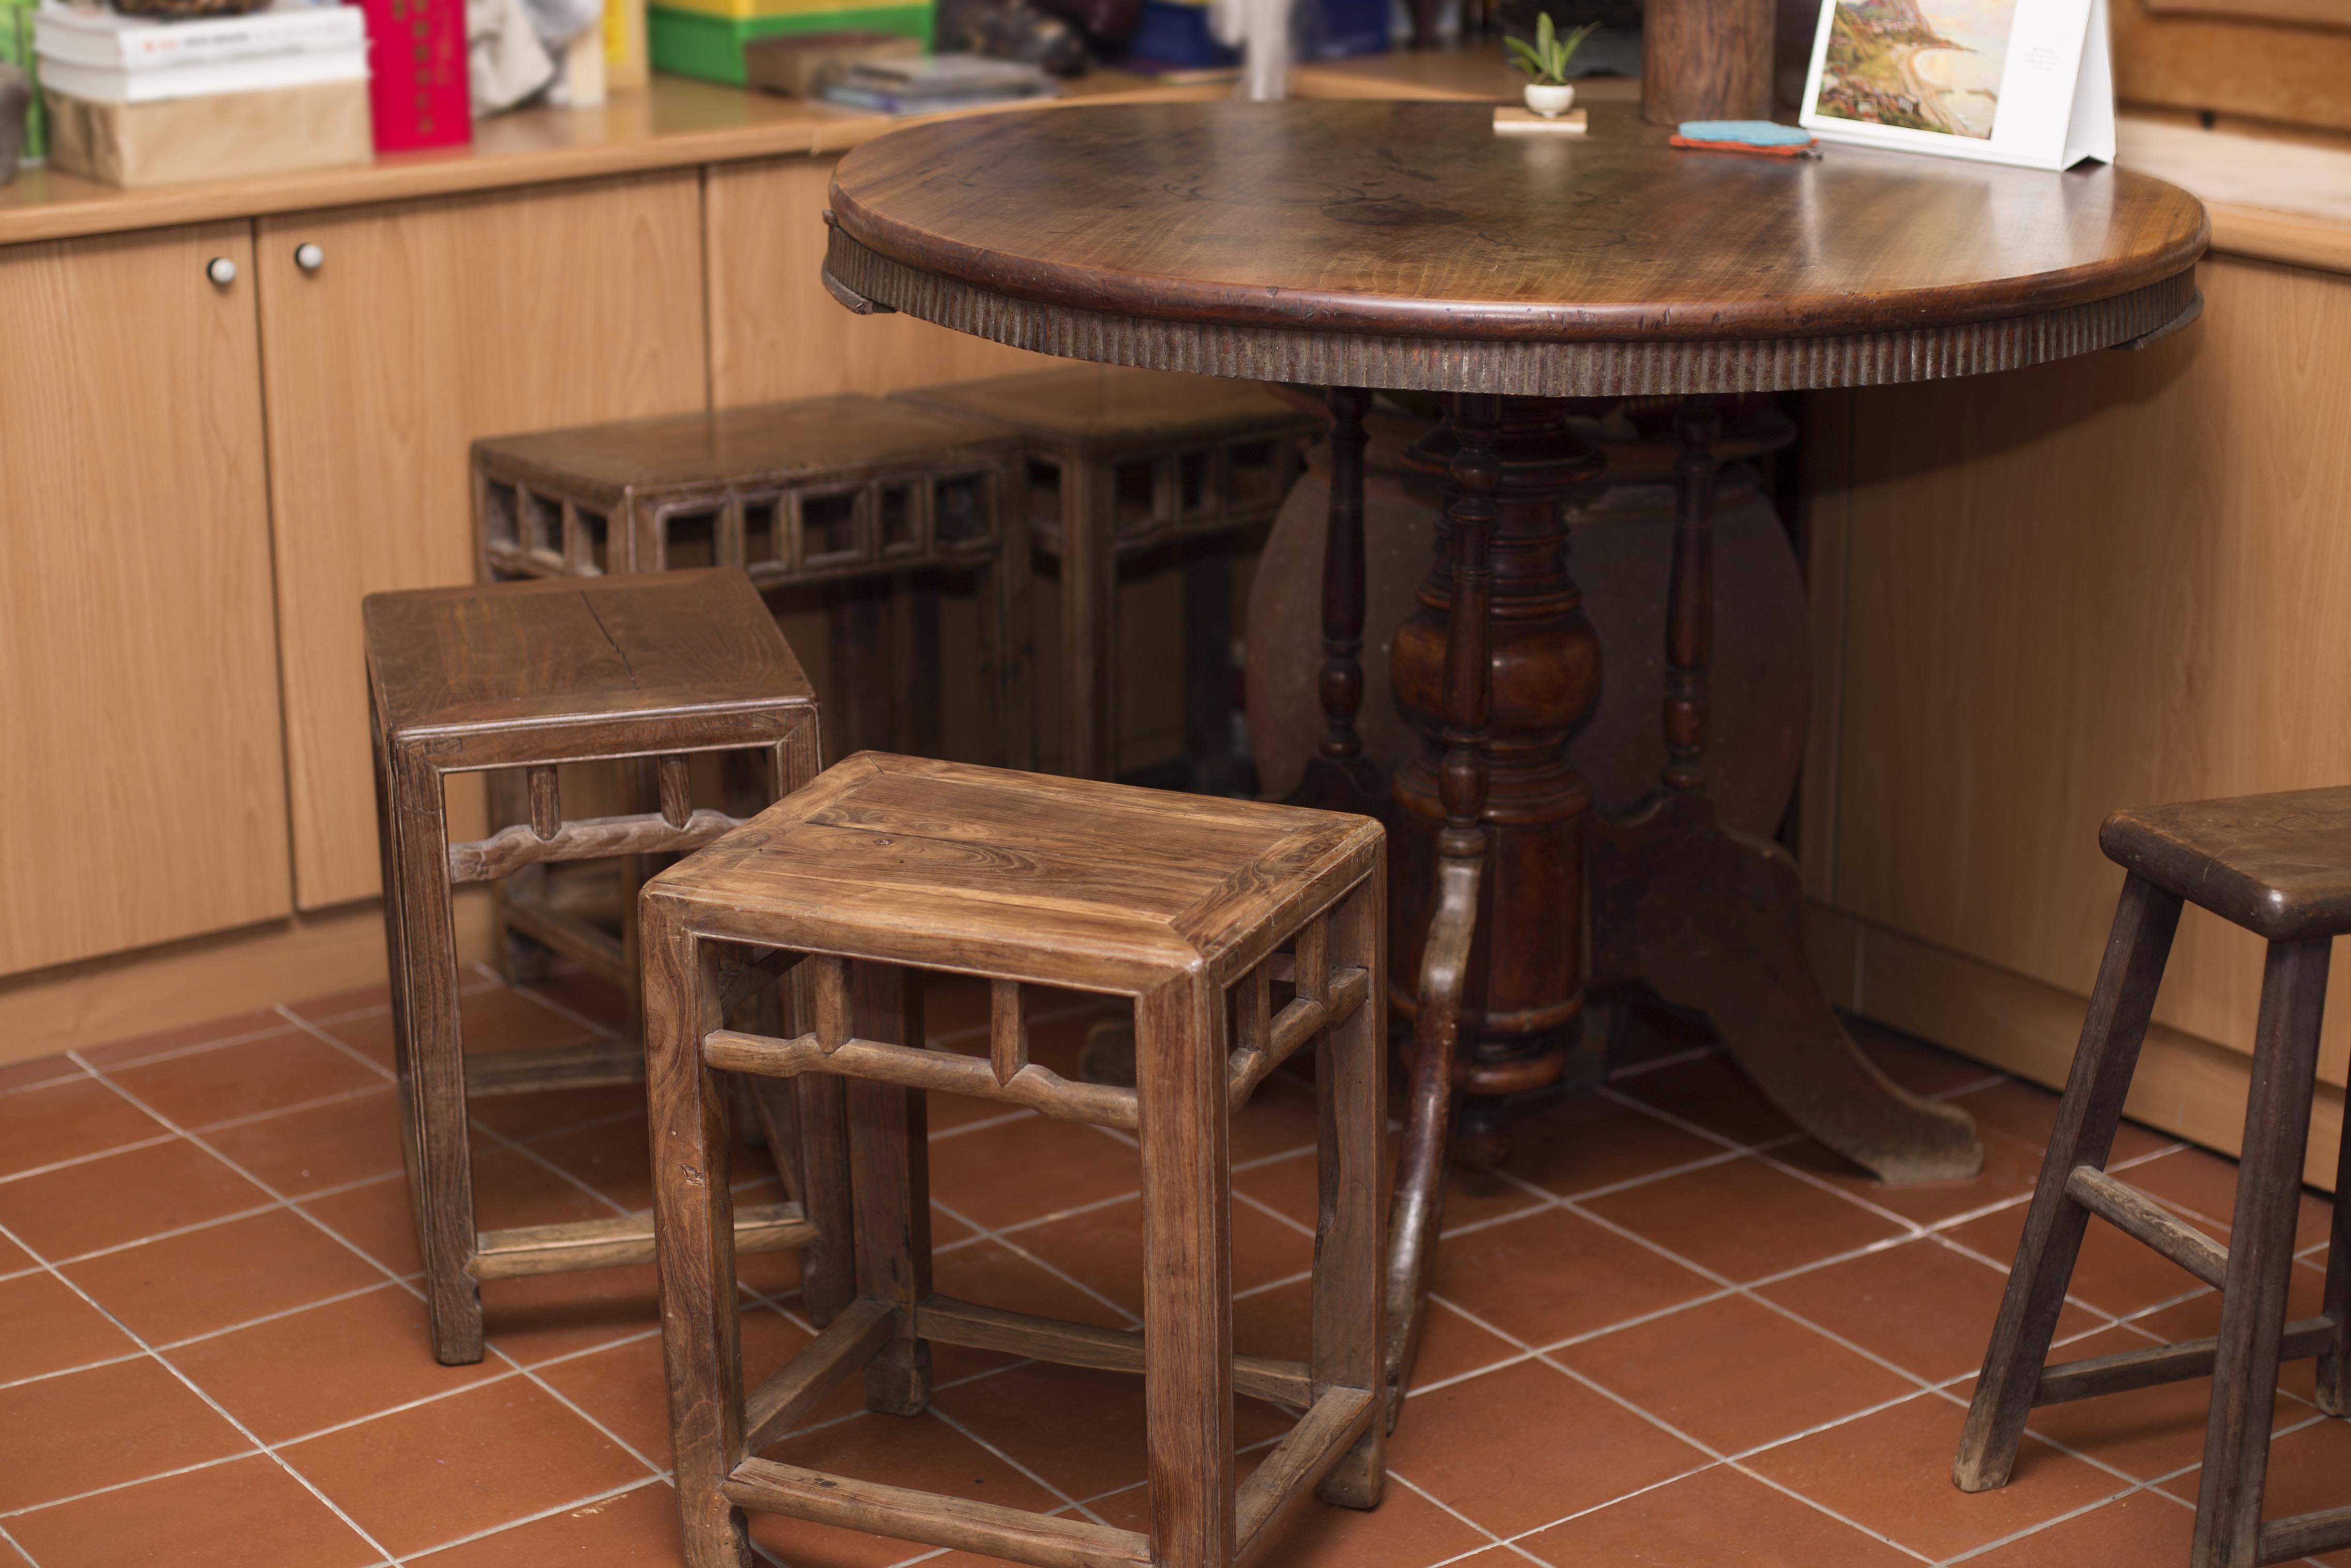 舊家具啟發了余舜德的研究興趣，直到現在他的研究室中，仍然擺著好幾張很有歲月痕跡與韻味的舊桌椅。攝影│張語辰